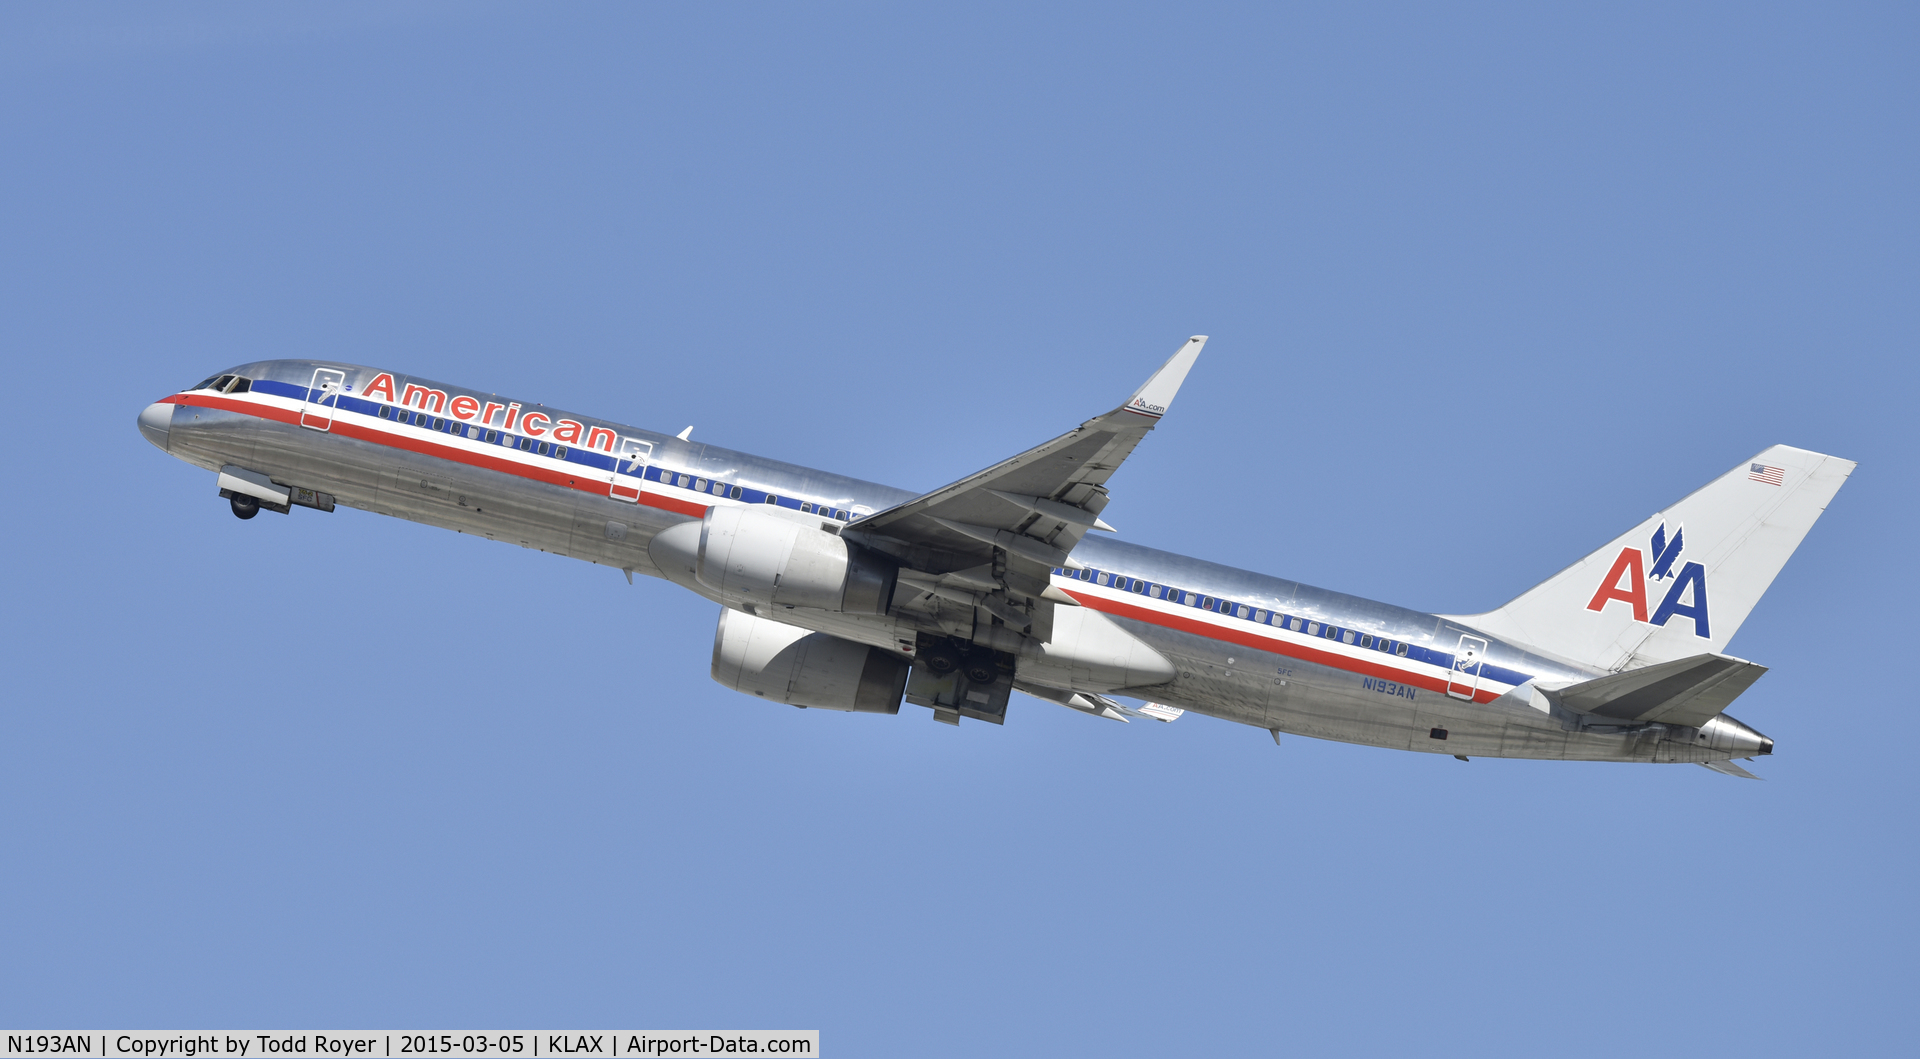 N193AN, 2001 Boeing 757-223 C/N 32387, Departing LAX on 25R